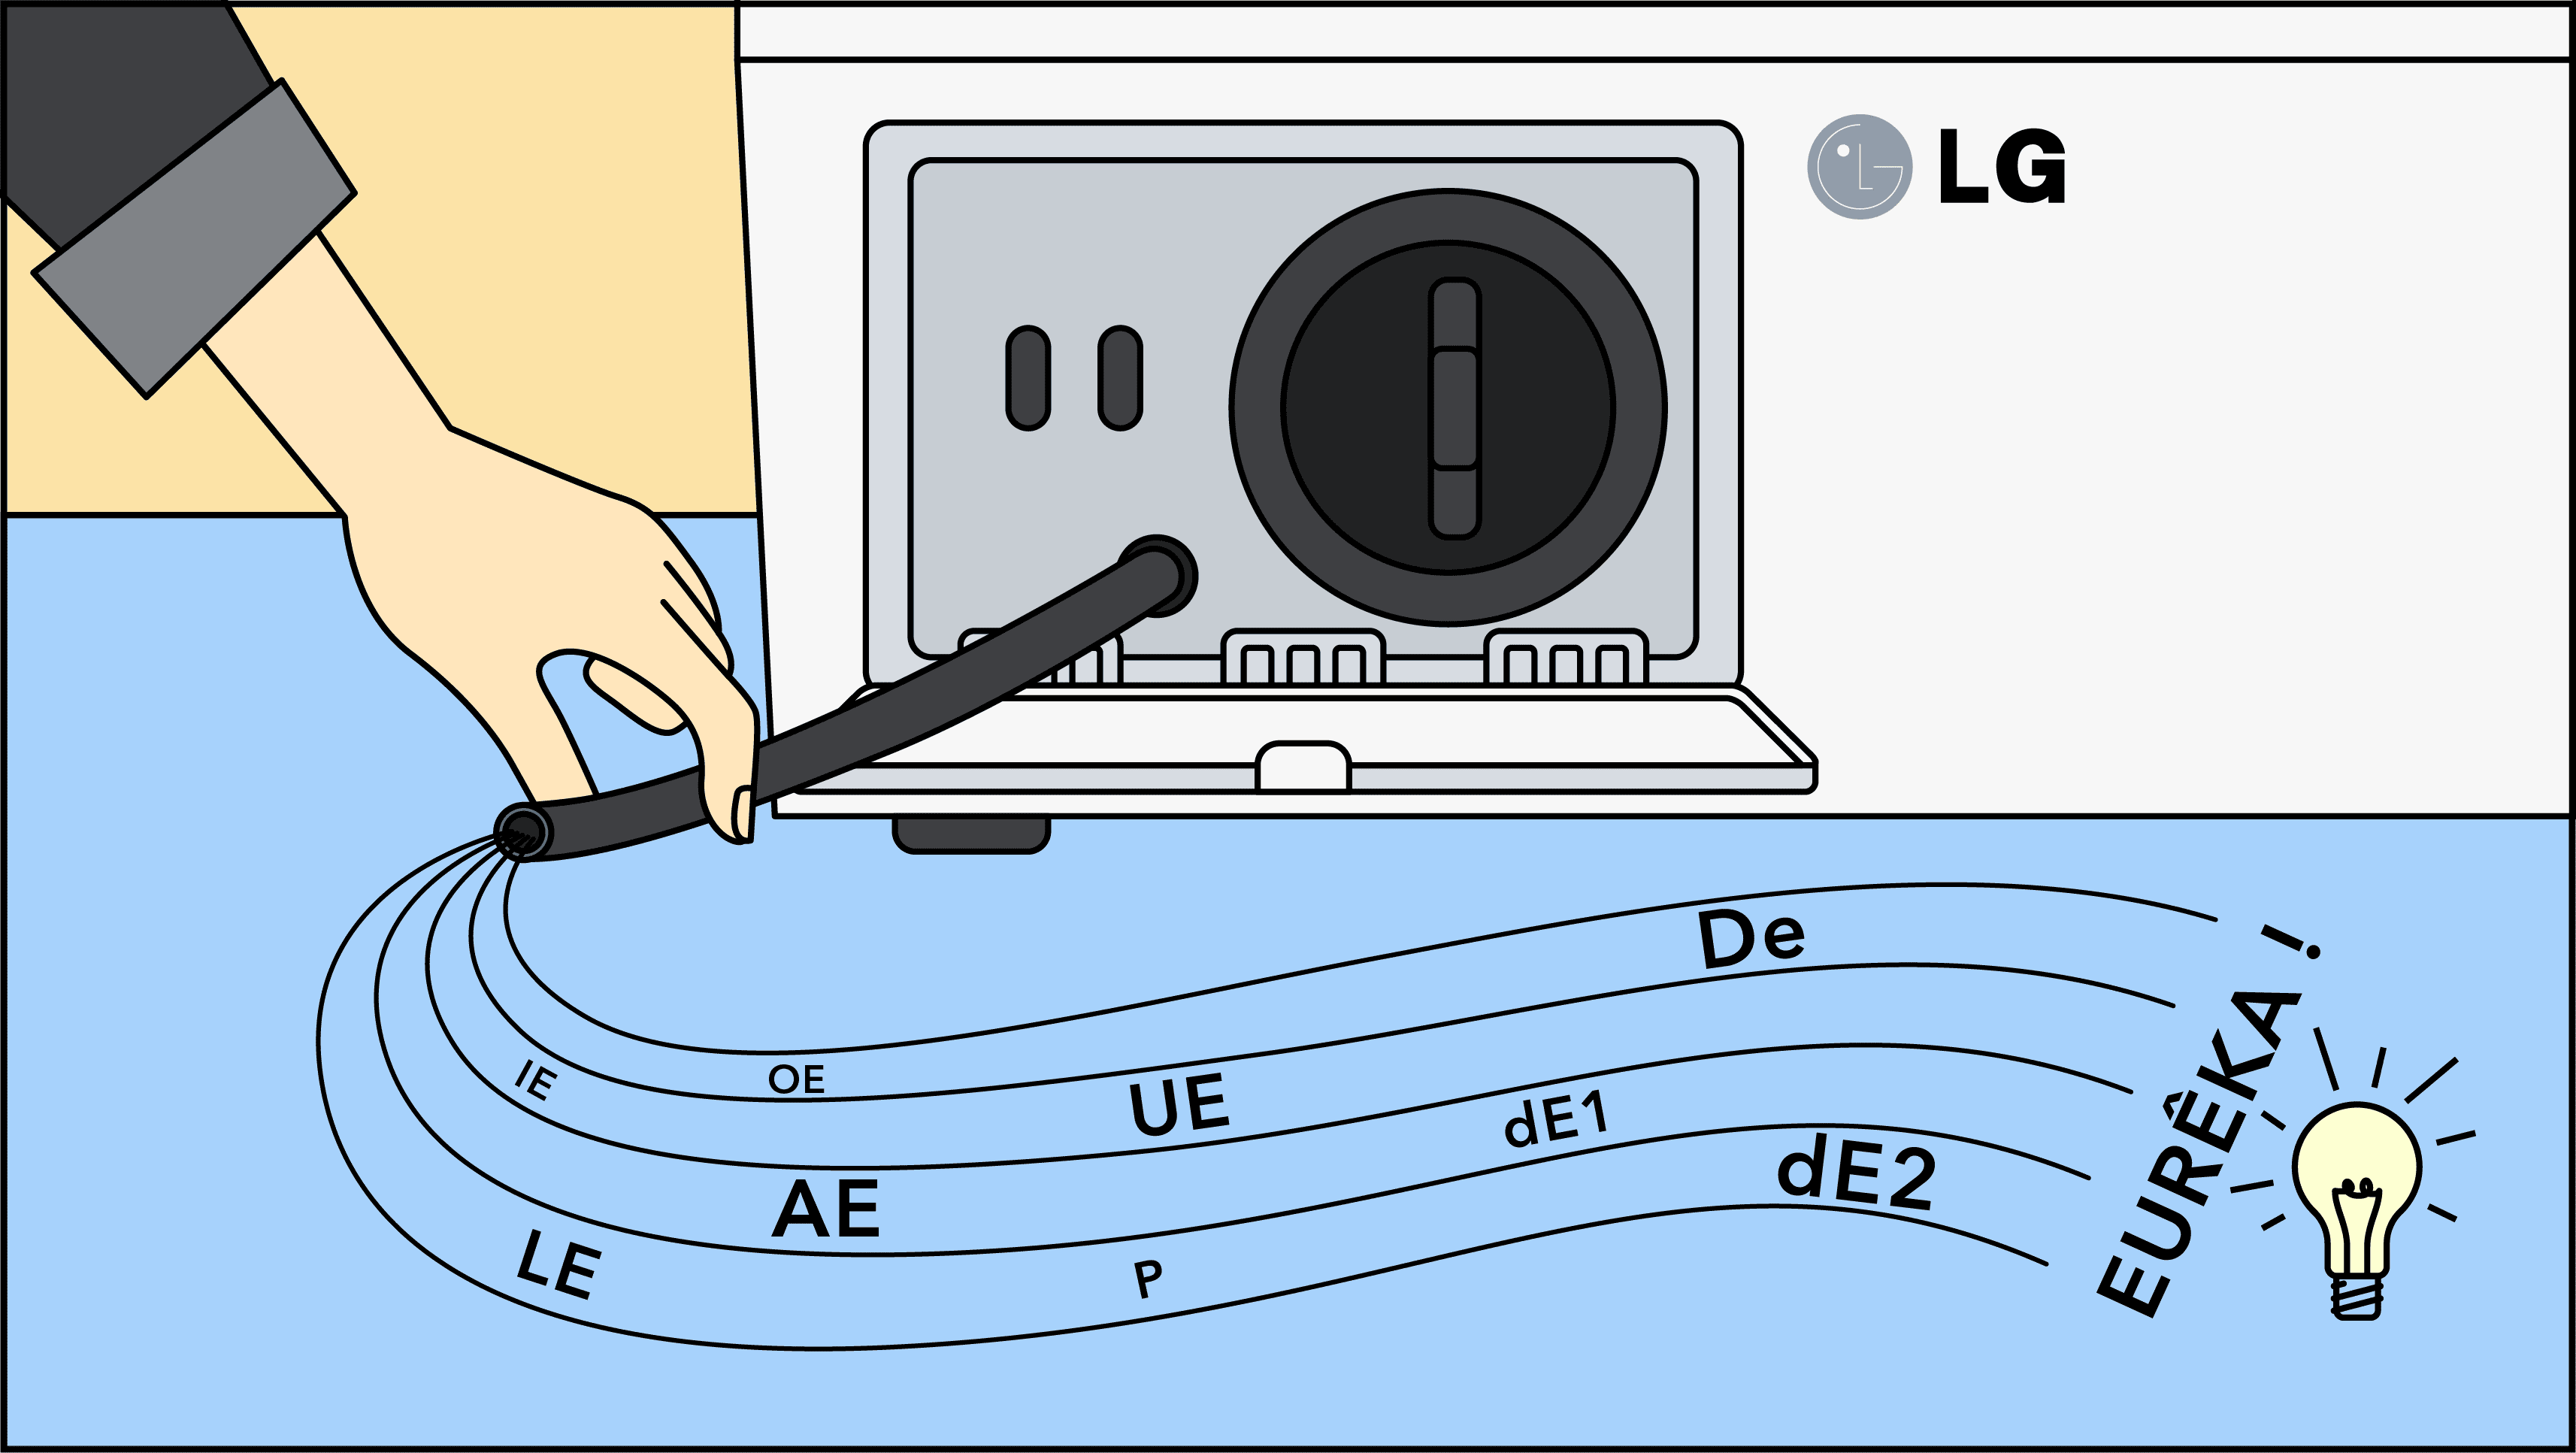 Comment trouver une panne (OE, UE, AE, P ou D) de machine à laver LG ?